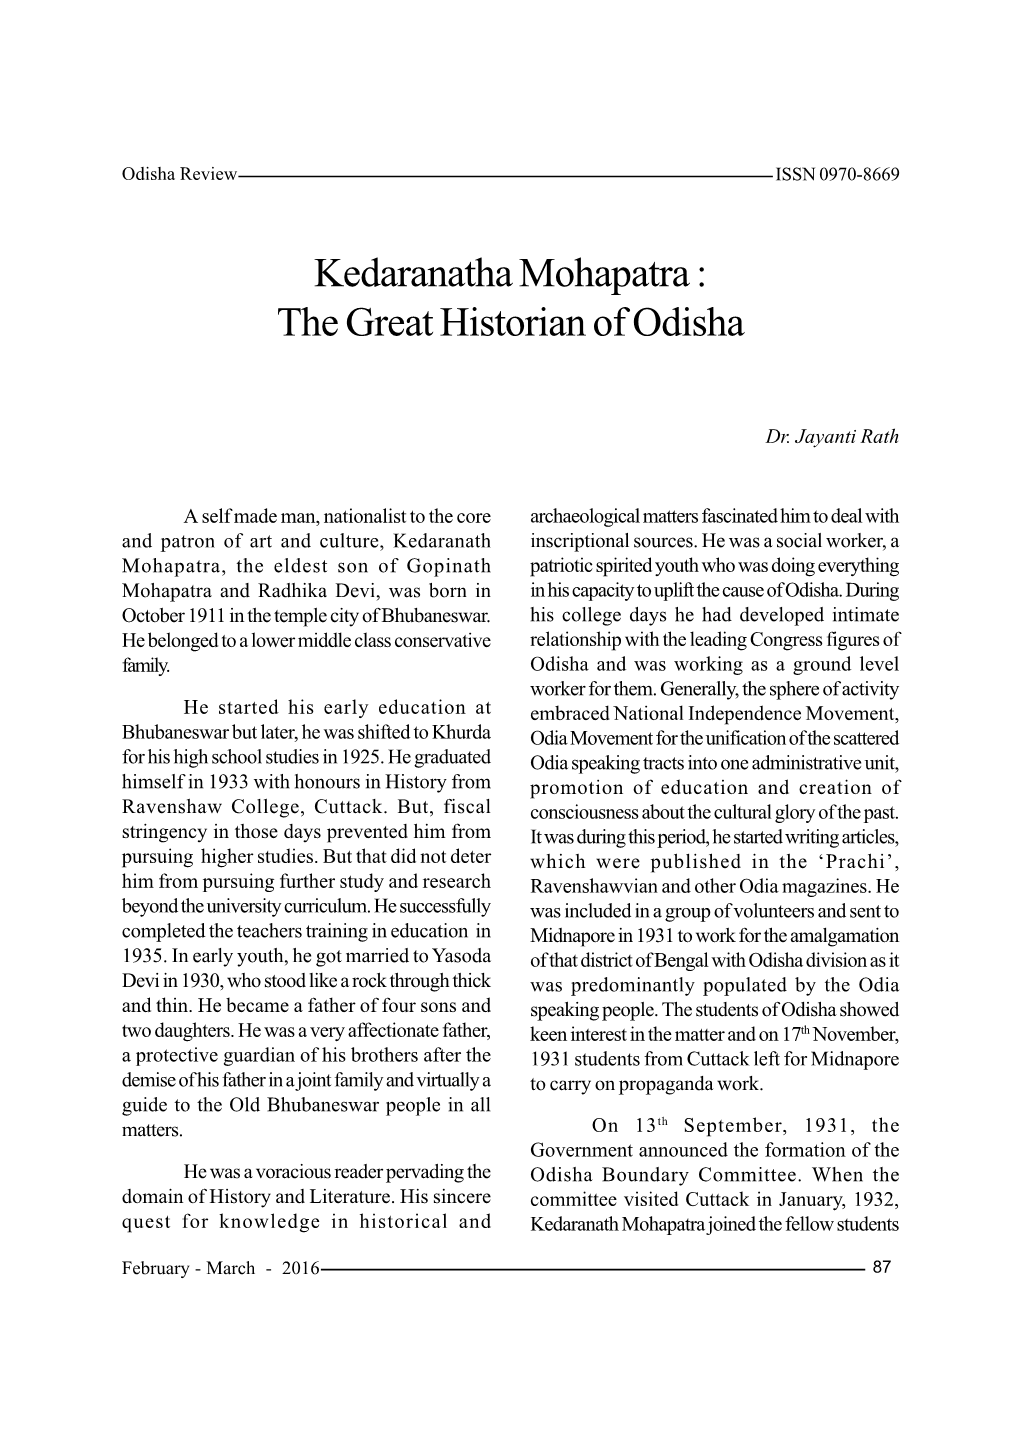 Kedaranatha Mohapatra : the Great Historian of Odisha